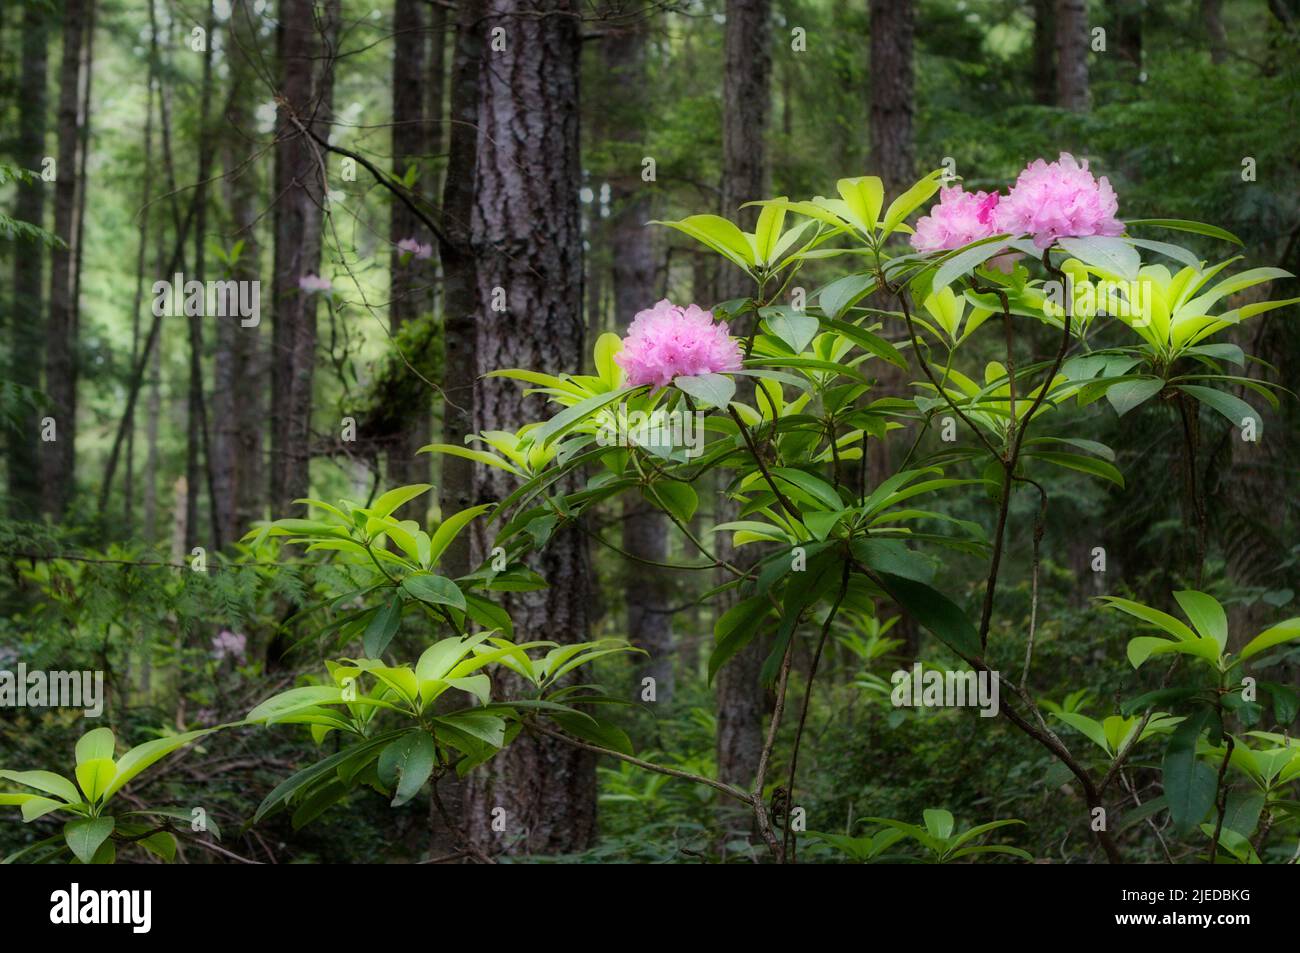 Zarte rosa Blüten des Rhododendrons, einer einheimischen Pflanze im pazifischen Nordwesten, blüht im Regenwald des Bundesstaates Washington, USA. Stockfoto